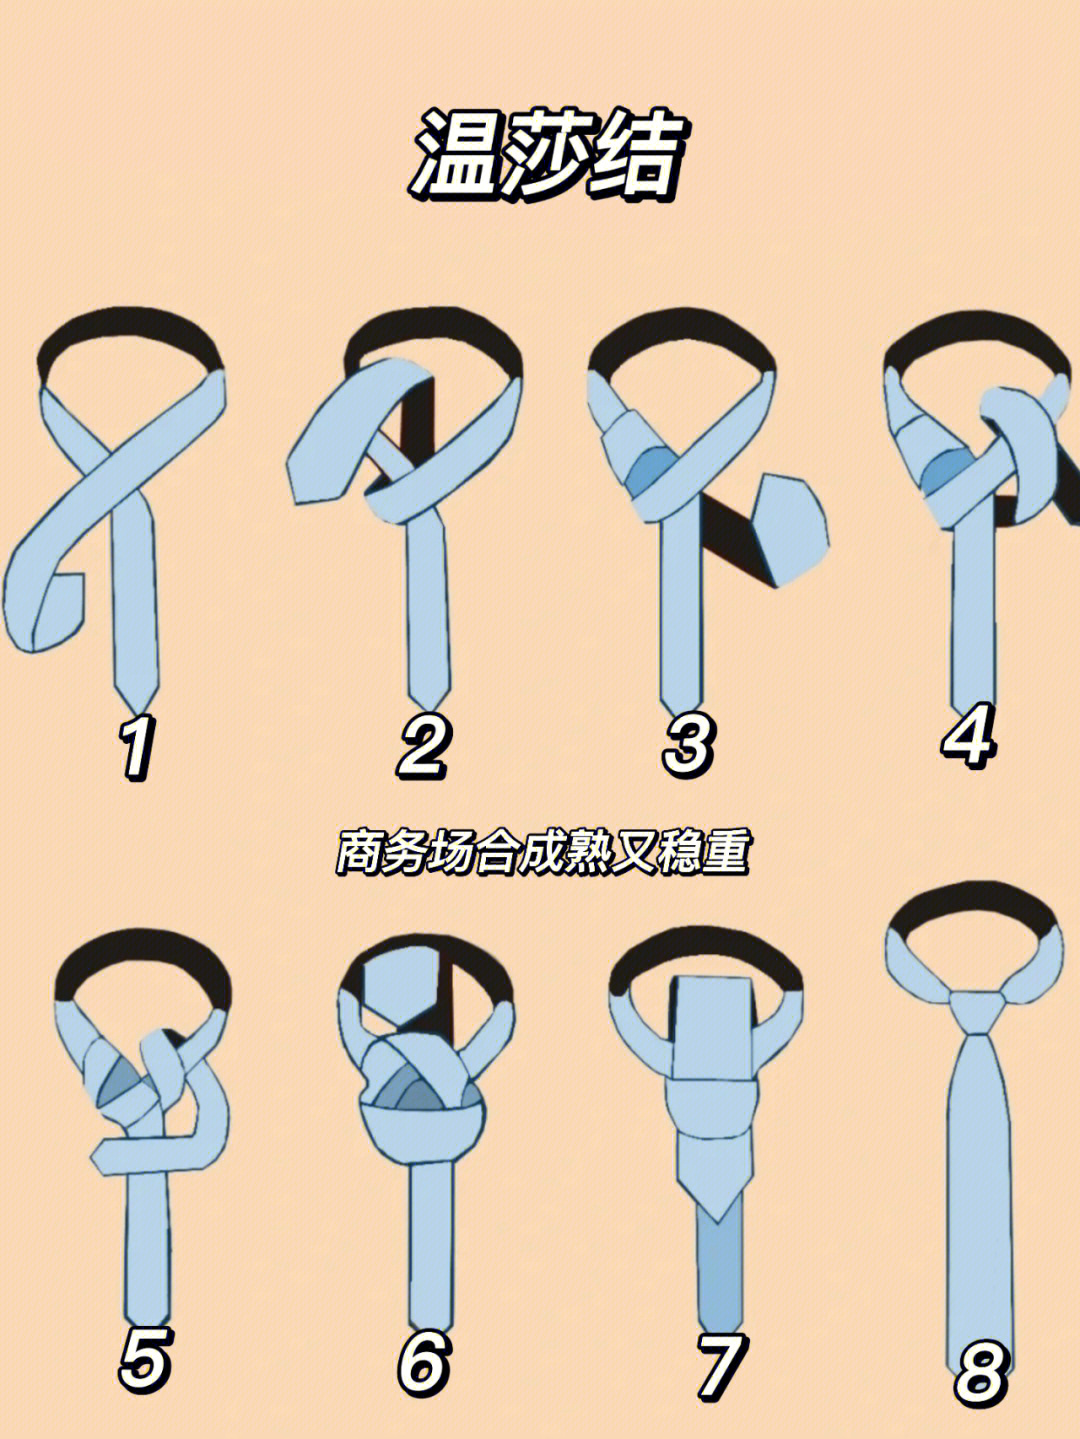 领带的六种打法